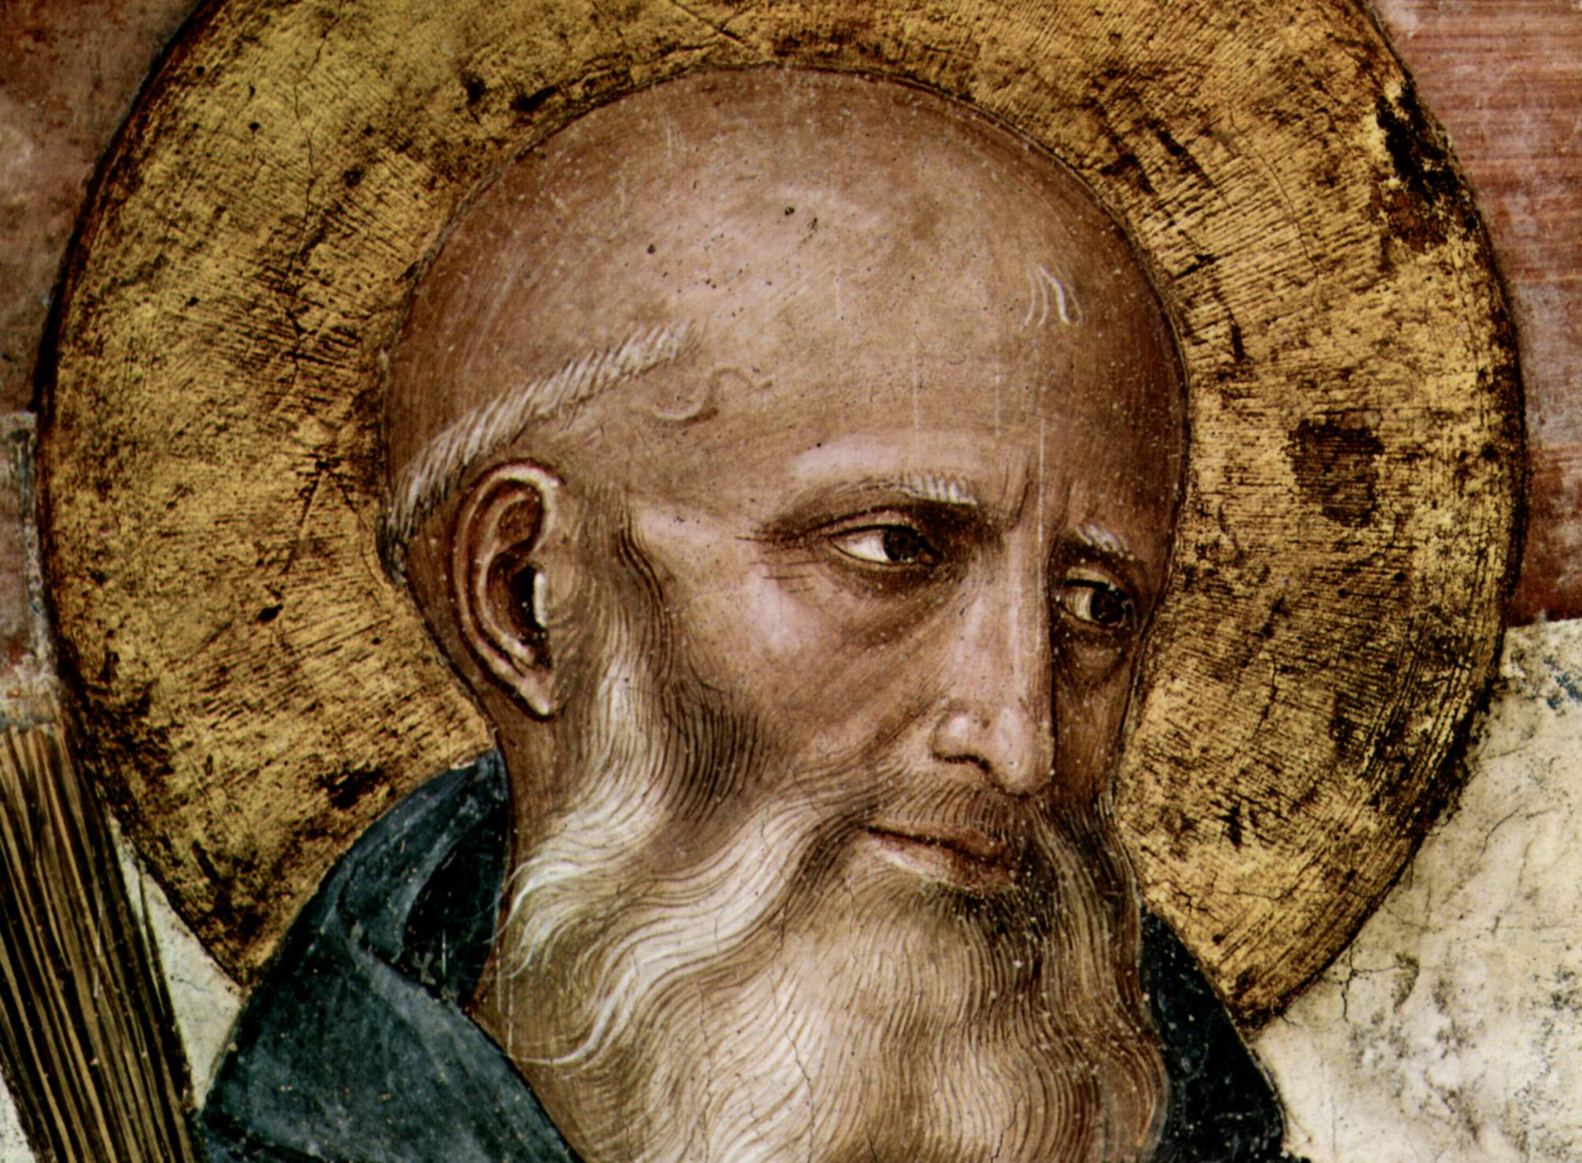 Sint-Benedictus van Nursia zegende de gifbeker, die in duizend stukken brak